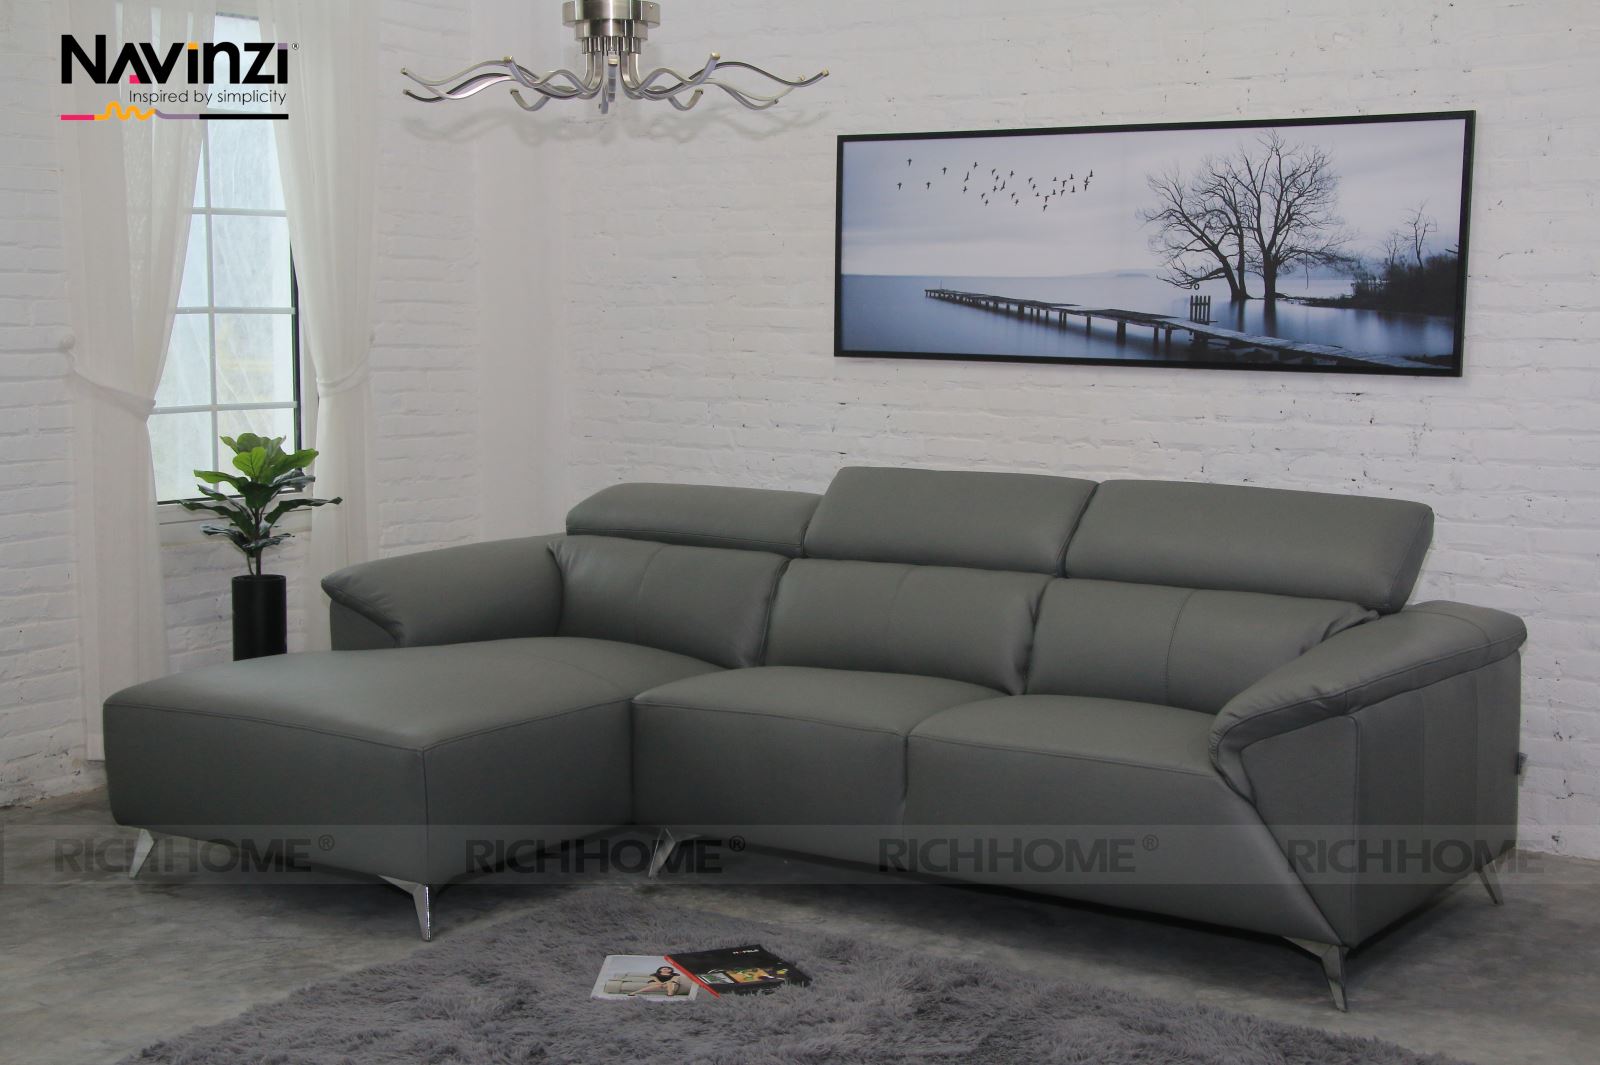 4 mẫu sofa cao cấp phù hợp với mọi căn hộ bạn nên biết - Ảnh 3